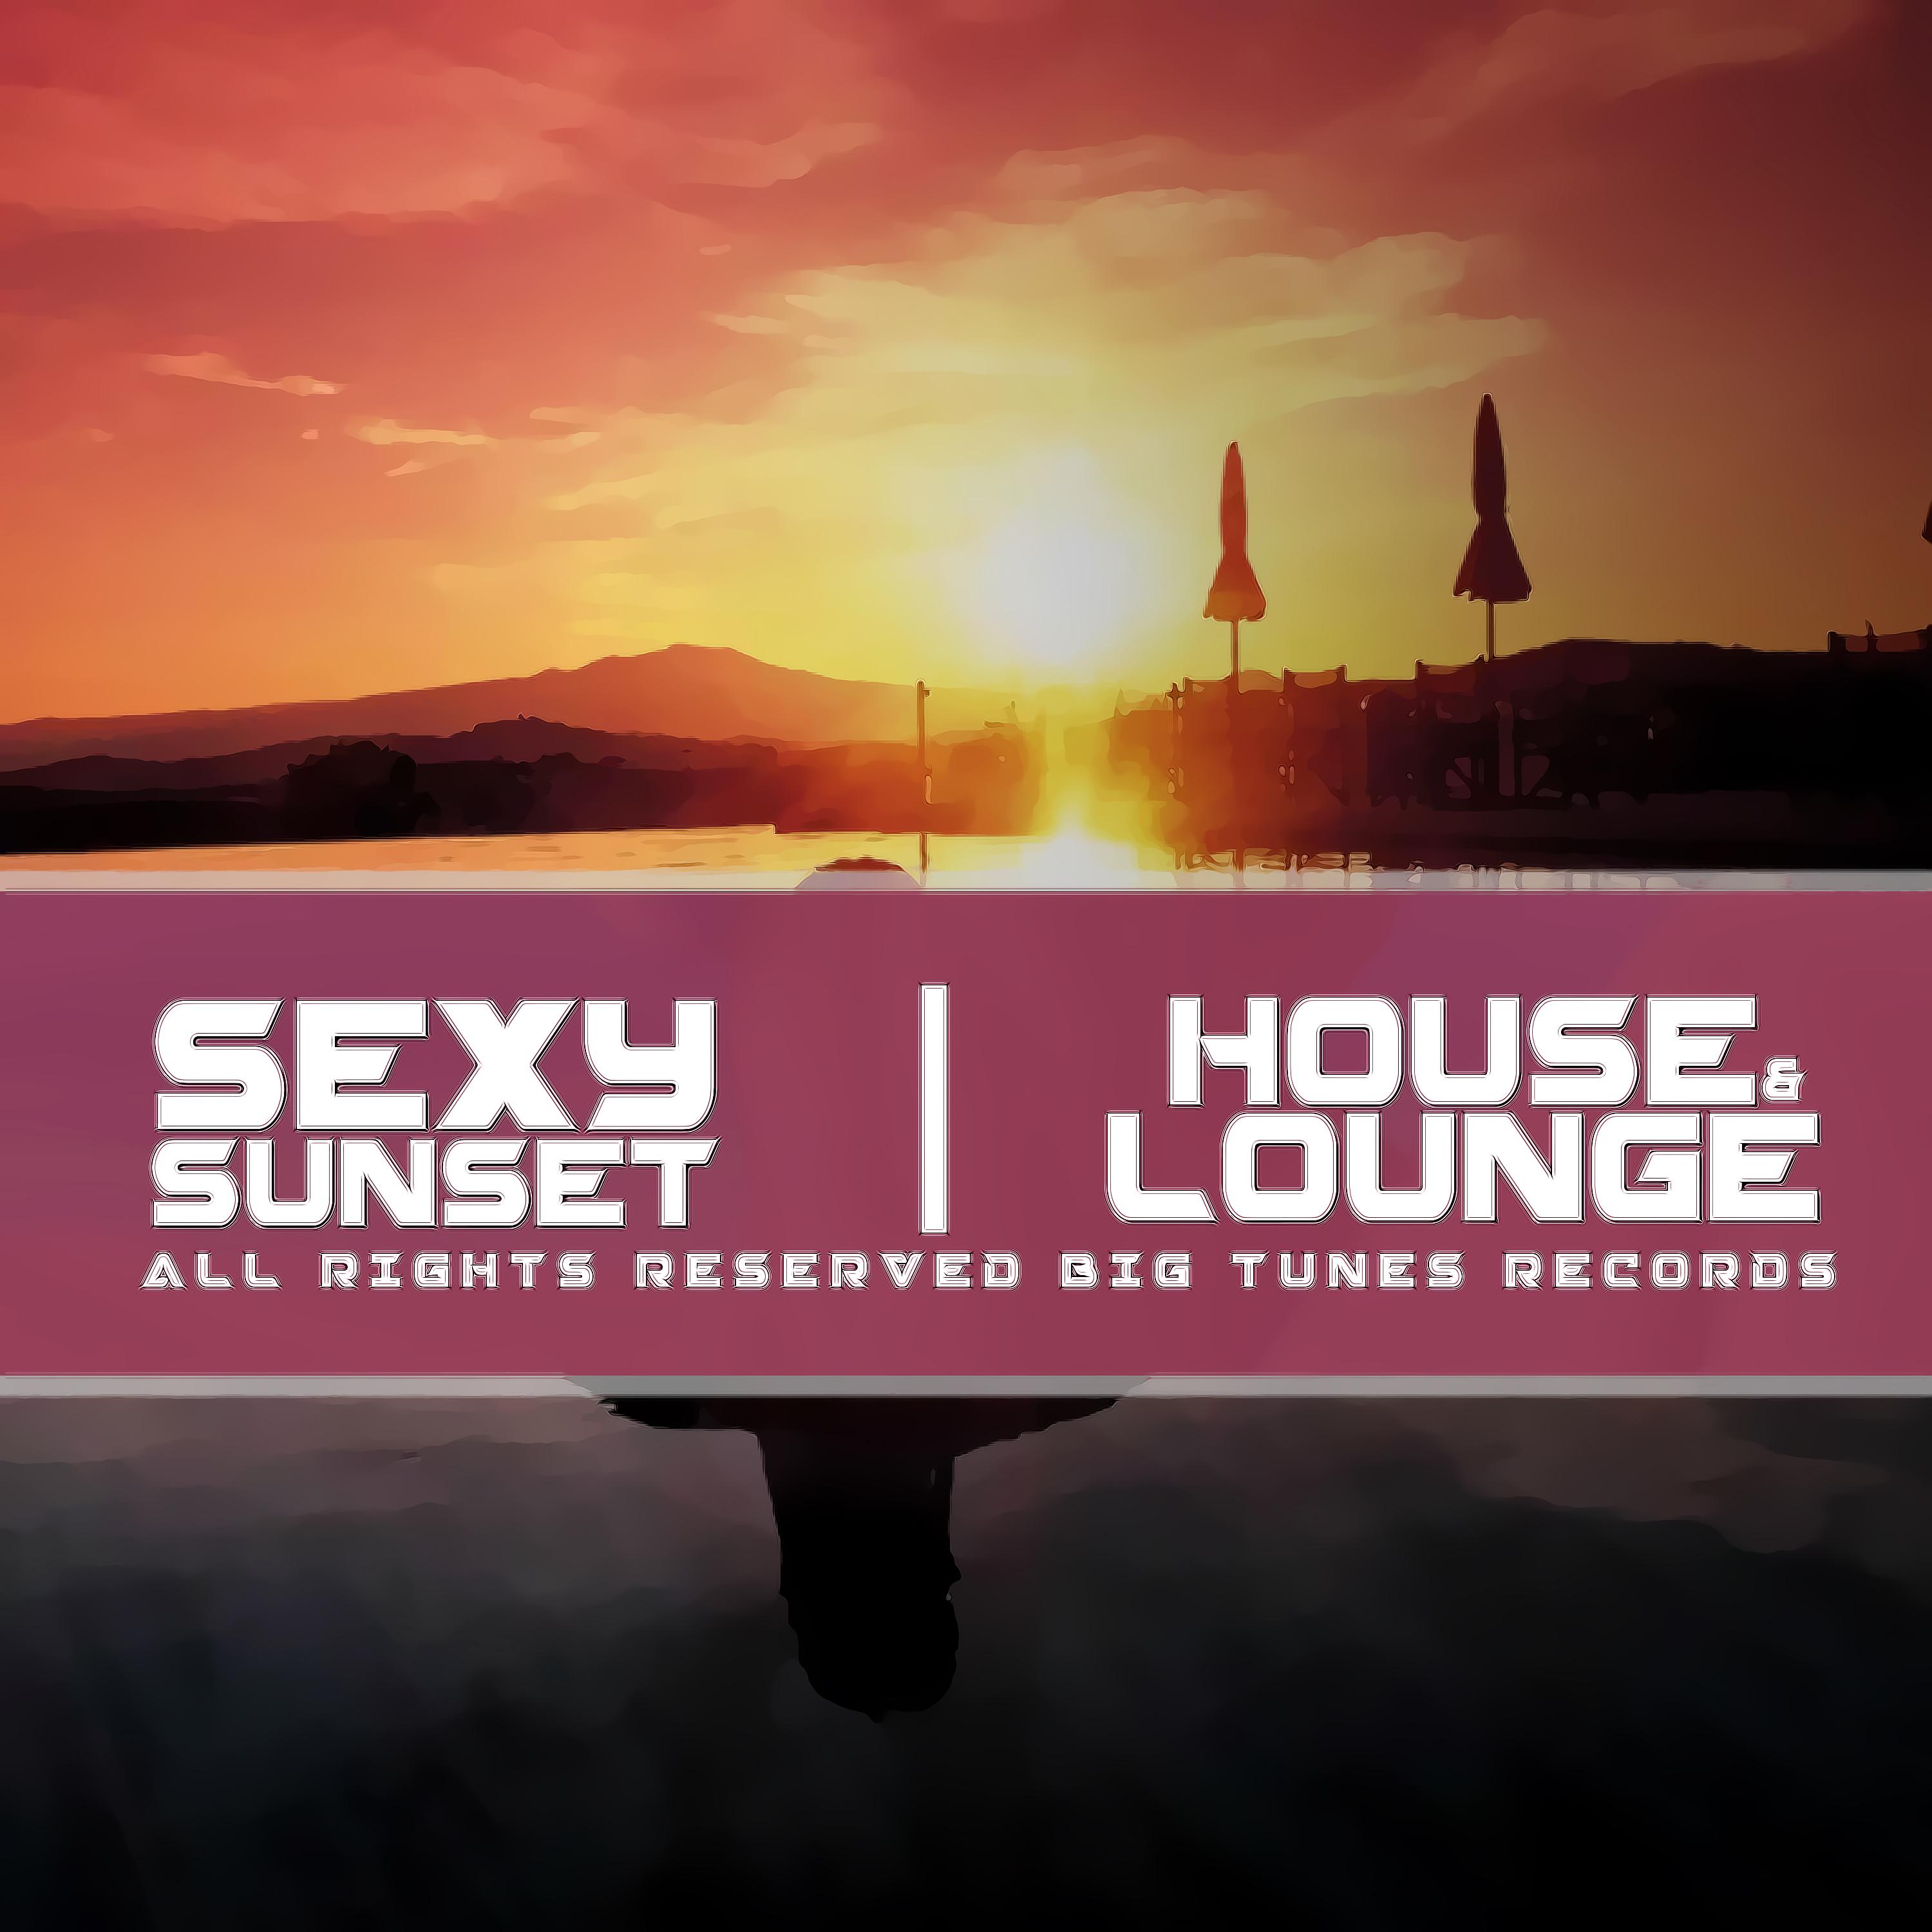 **** Sunset House & Lounge